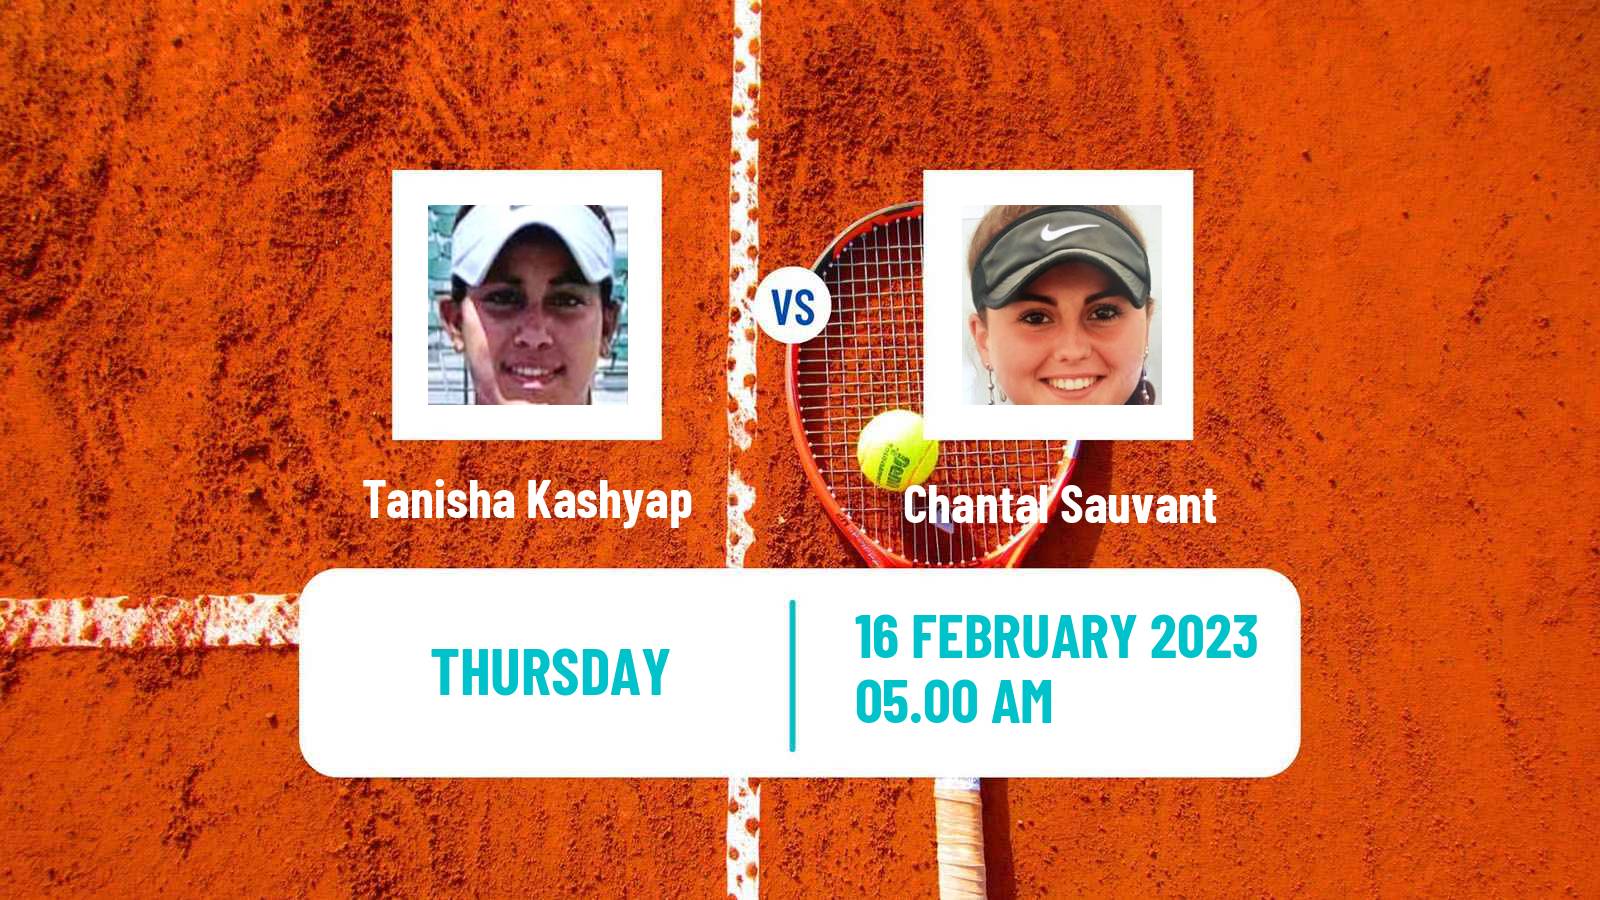 Tennis ITF Tournaments Tanisha Kashyap - Chantal Sauvant